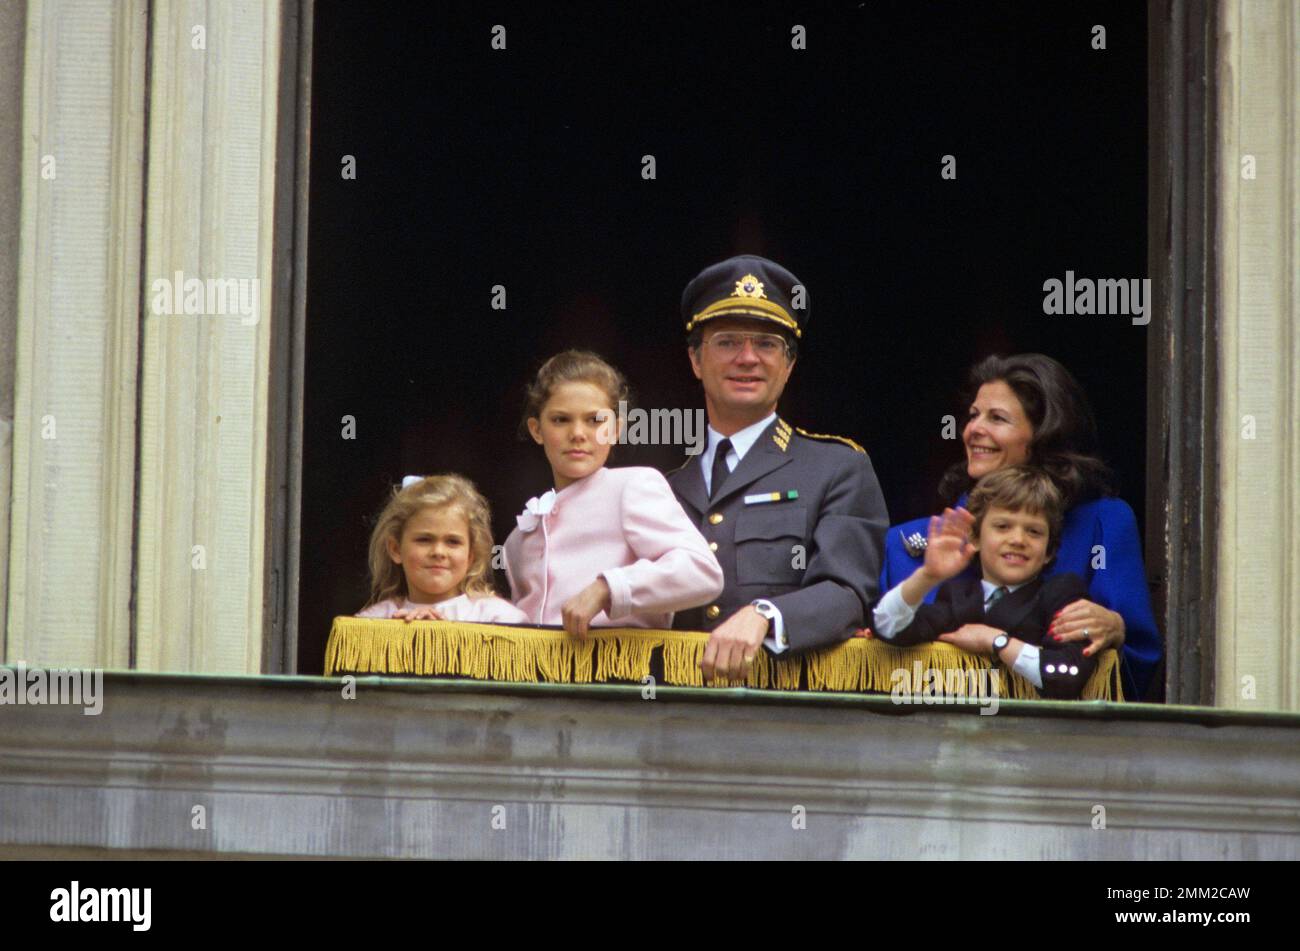 Carl XVI Gustaf, re di Svezia. Nato il 30 aprile 1946. Il re Carlo XVI Gustaf Regina Silvia i loro figli, la principessa Madeleine, la principessa corona Victoria, il principe Carl Philip, in una finestra aperta del castello reale di Stoccolma per celebrare il compleanno del re, 30 aprile 1988. Foto Stock